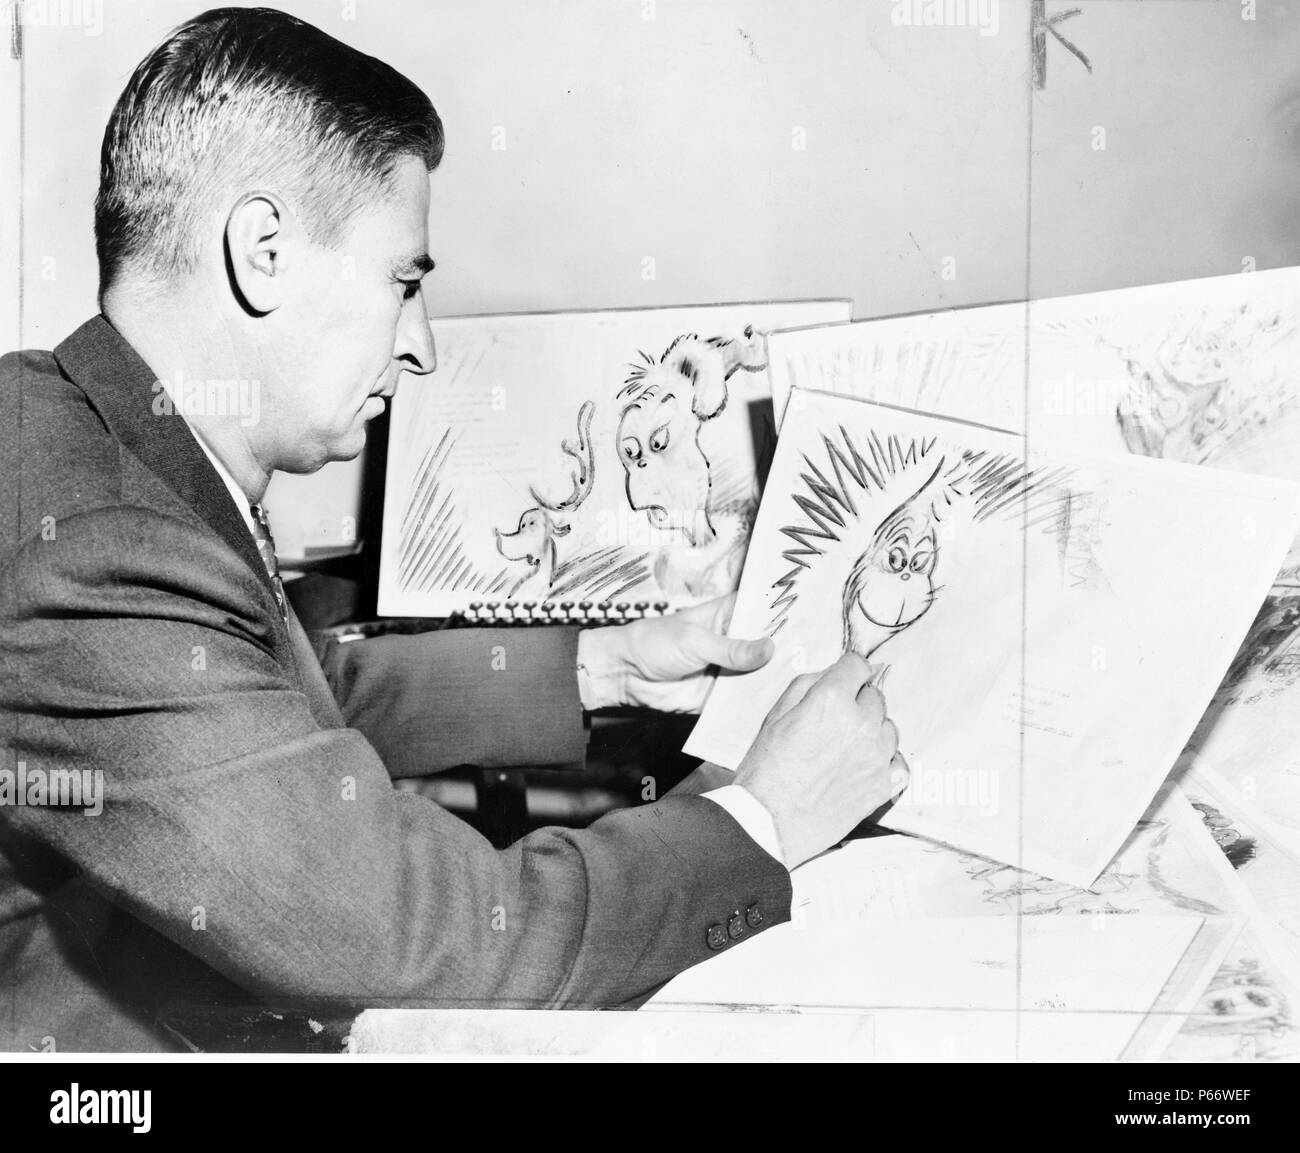 Theodor Seuss Geisel 1904 - 1991, US-amerikanischer Schriftsteller, Dichter und Zeichner bei der Arbeit auf einer Zeichnung von einem GRINCH, der Held von seinem in Kürze erscheinenden Buch, "Wie der Grinch Weihnachten gestohlen hat" Stockfoto